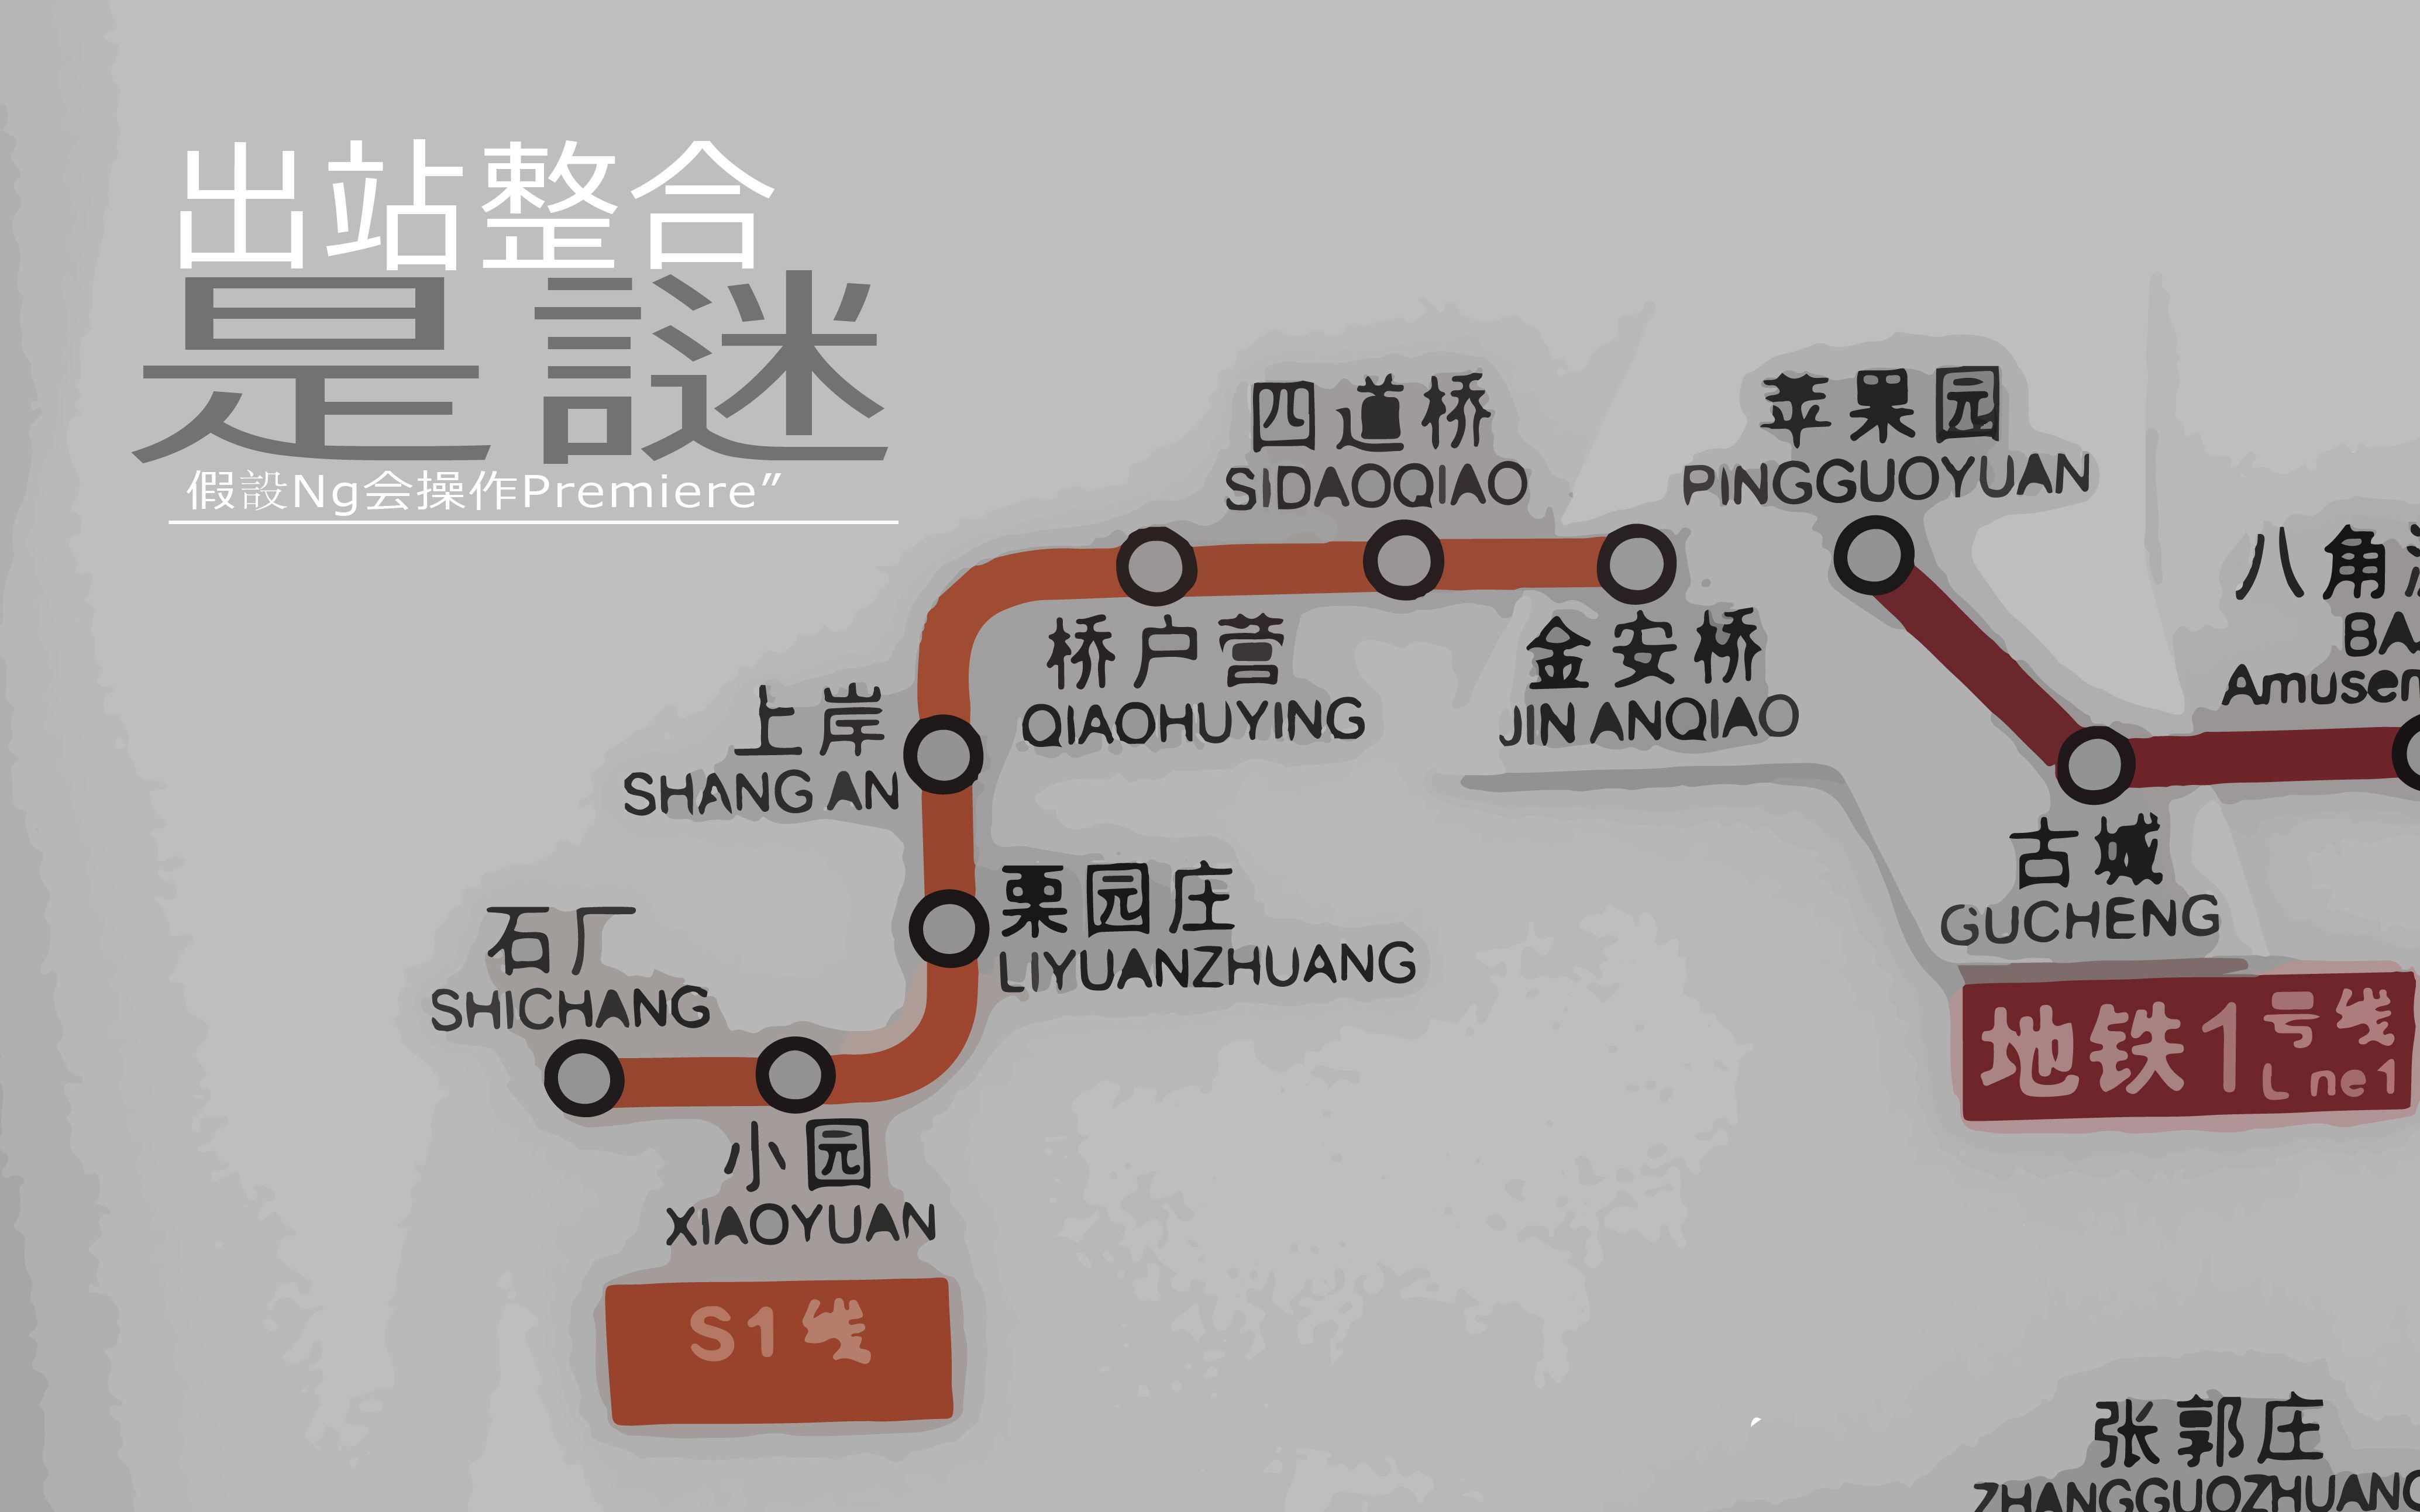 时间:3月前时长:13:08 北京地铁s1线车门视角金安桥-石厂方向无字幕